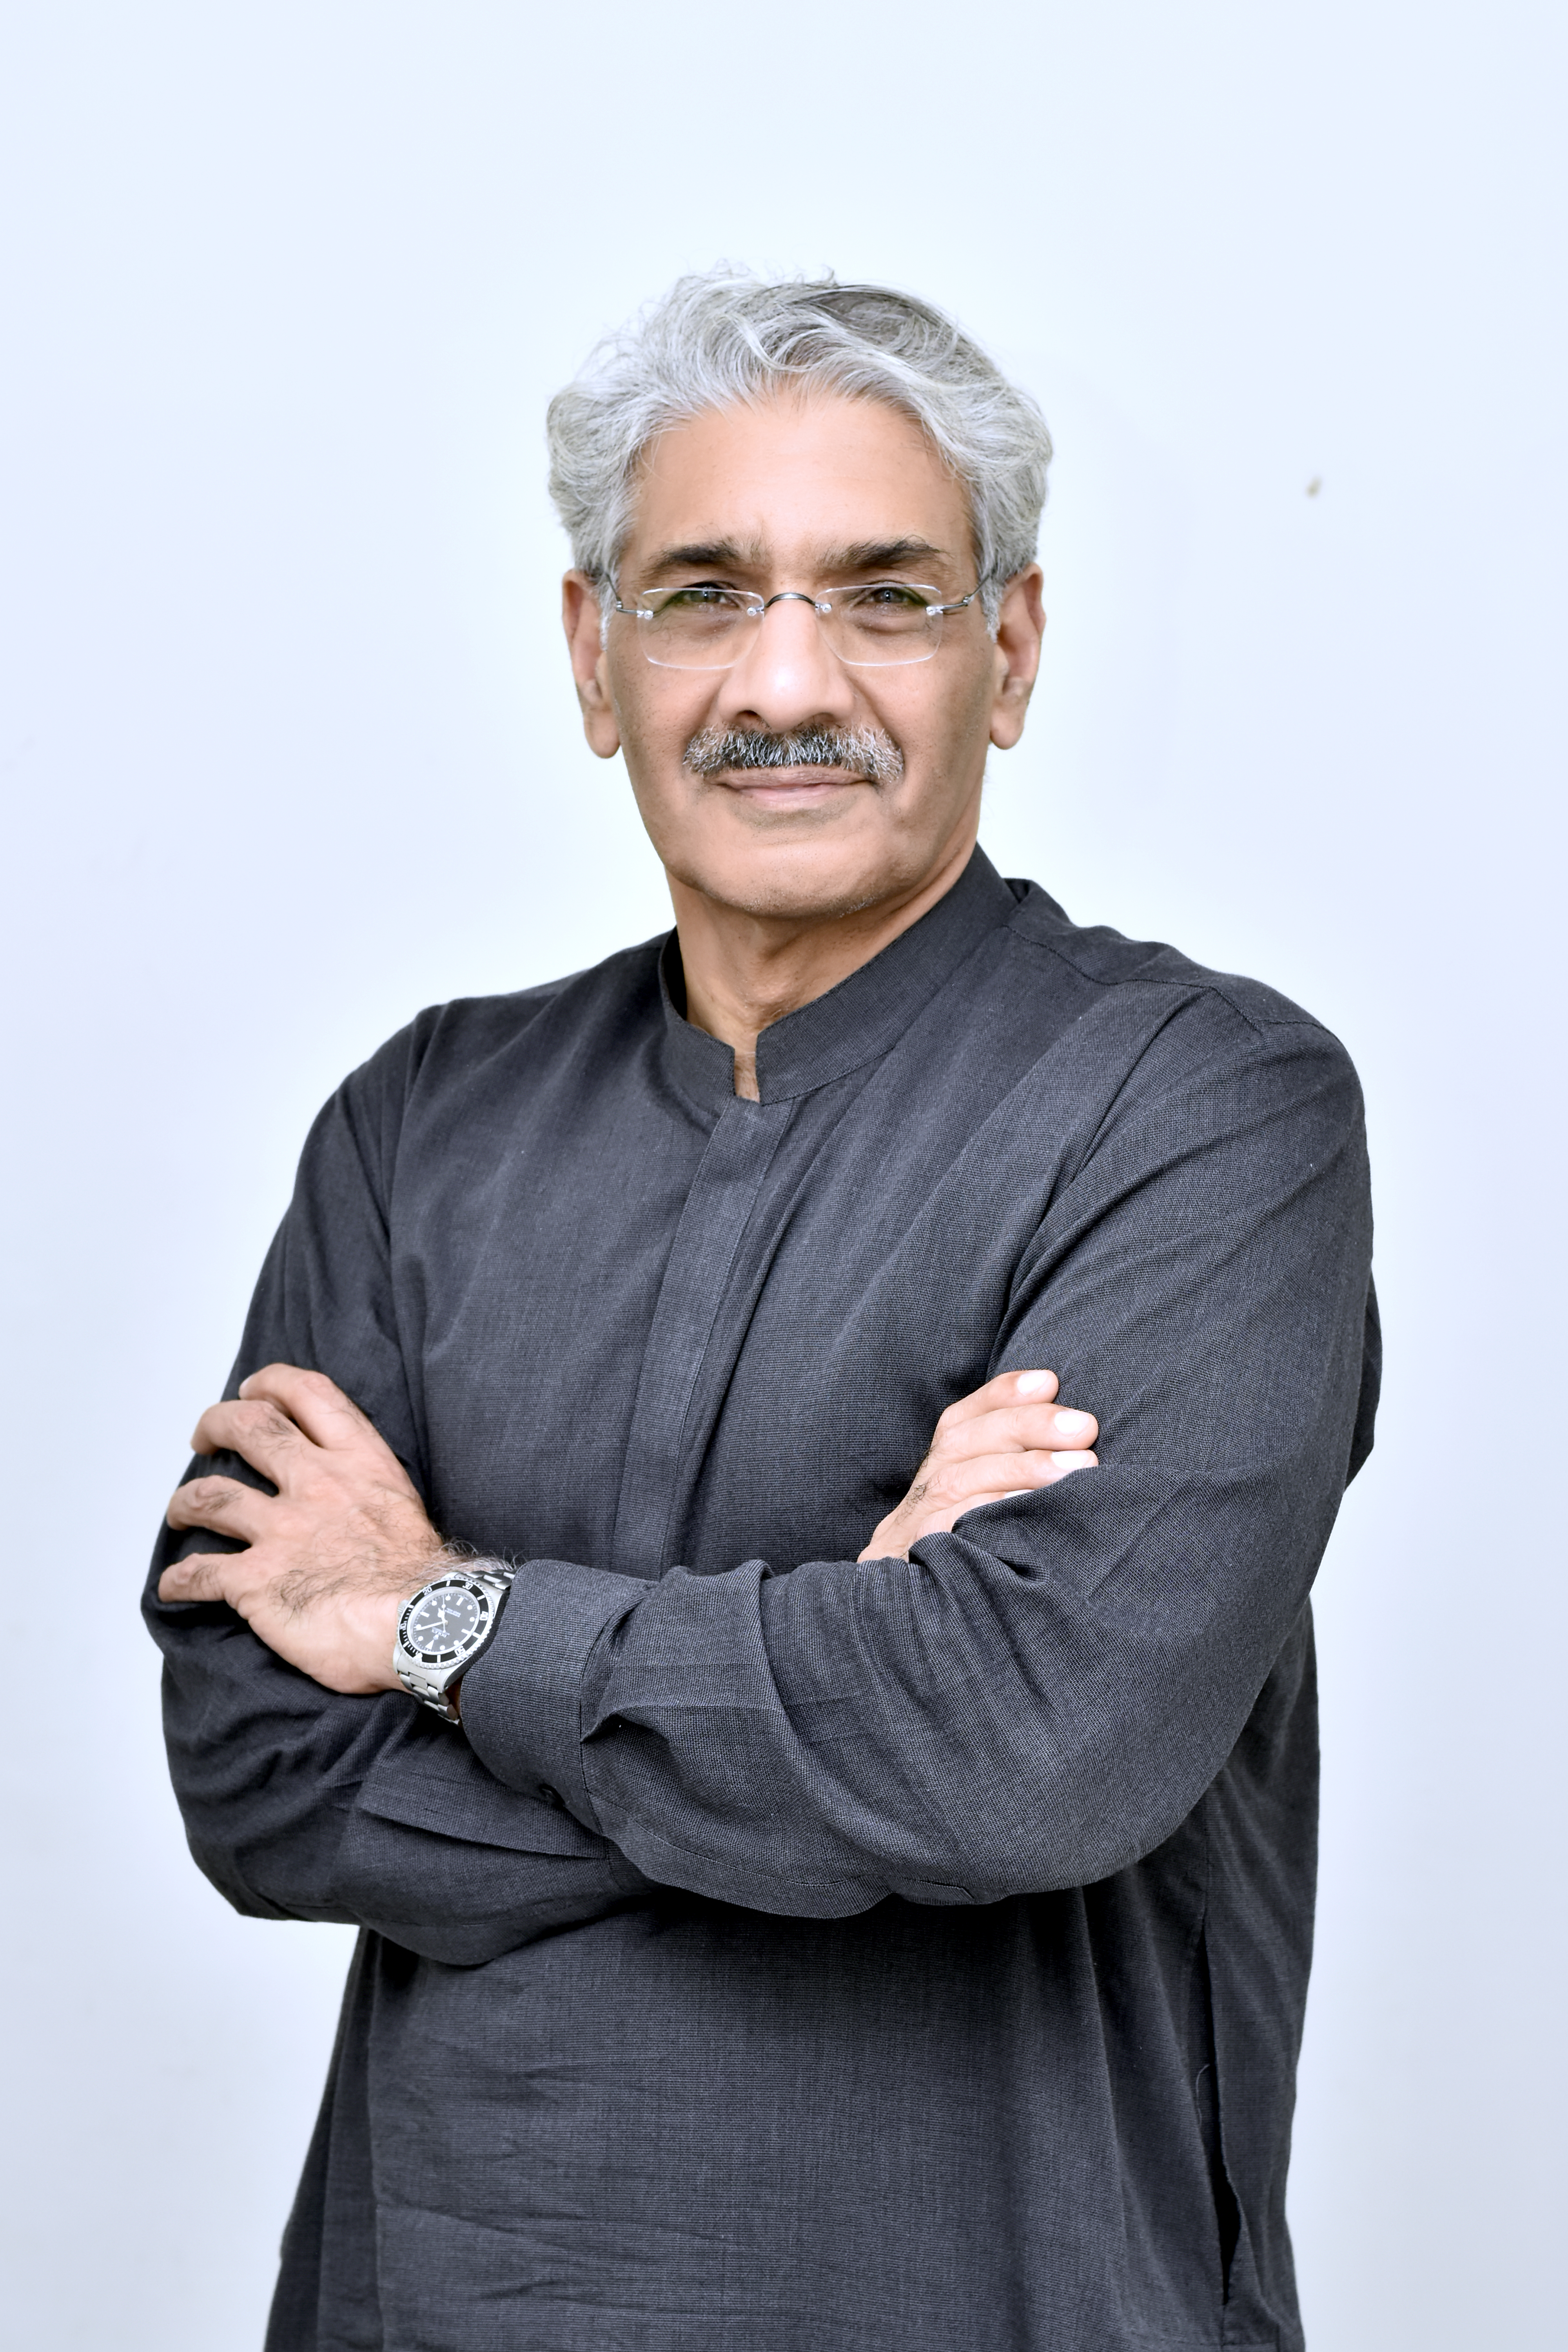 Dr Sohail Asif Qureshi